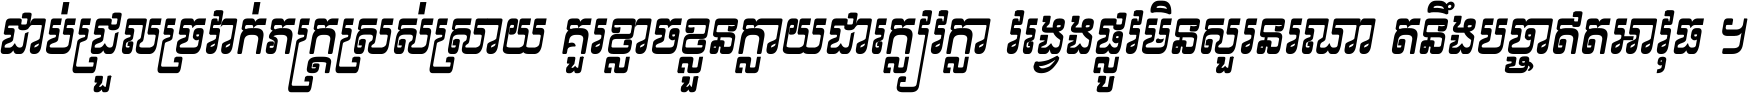 Kh Baphnom First 2017 Italic